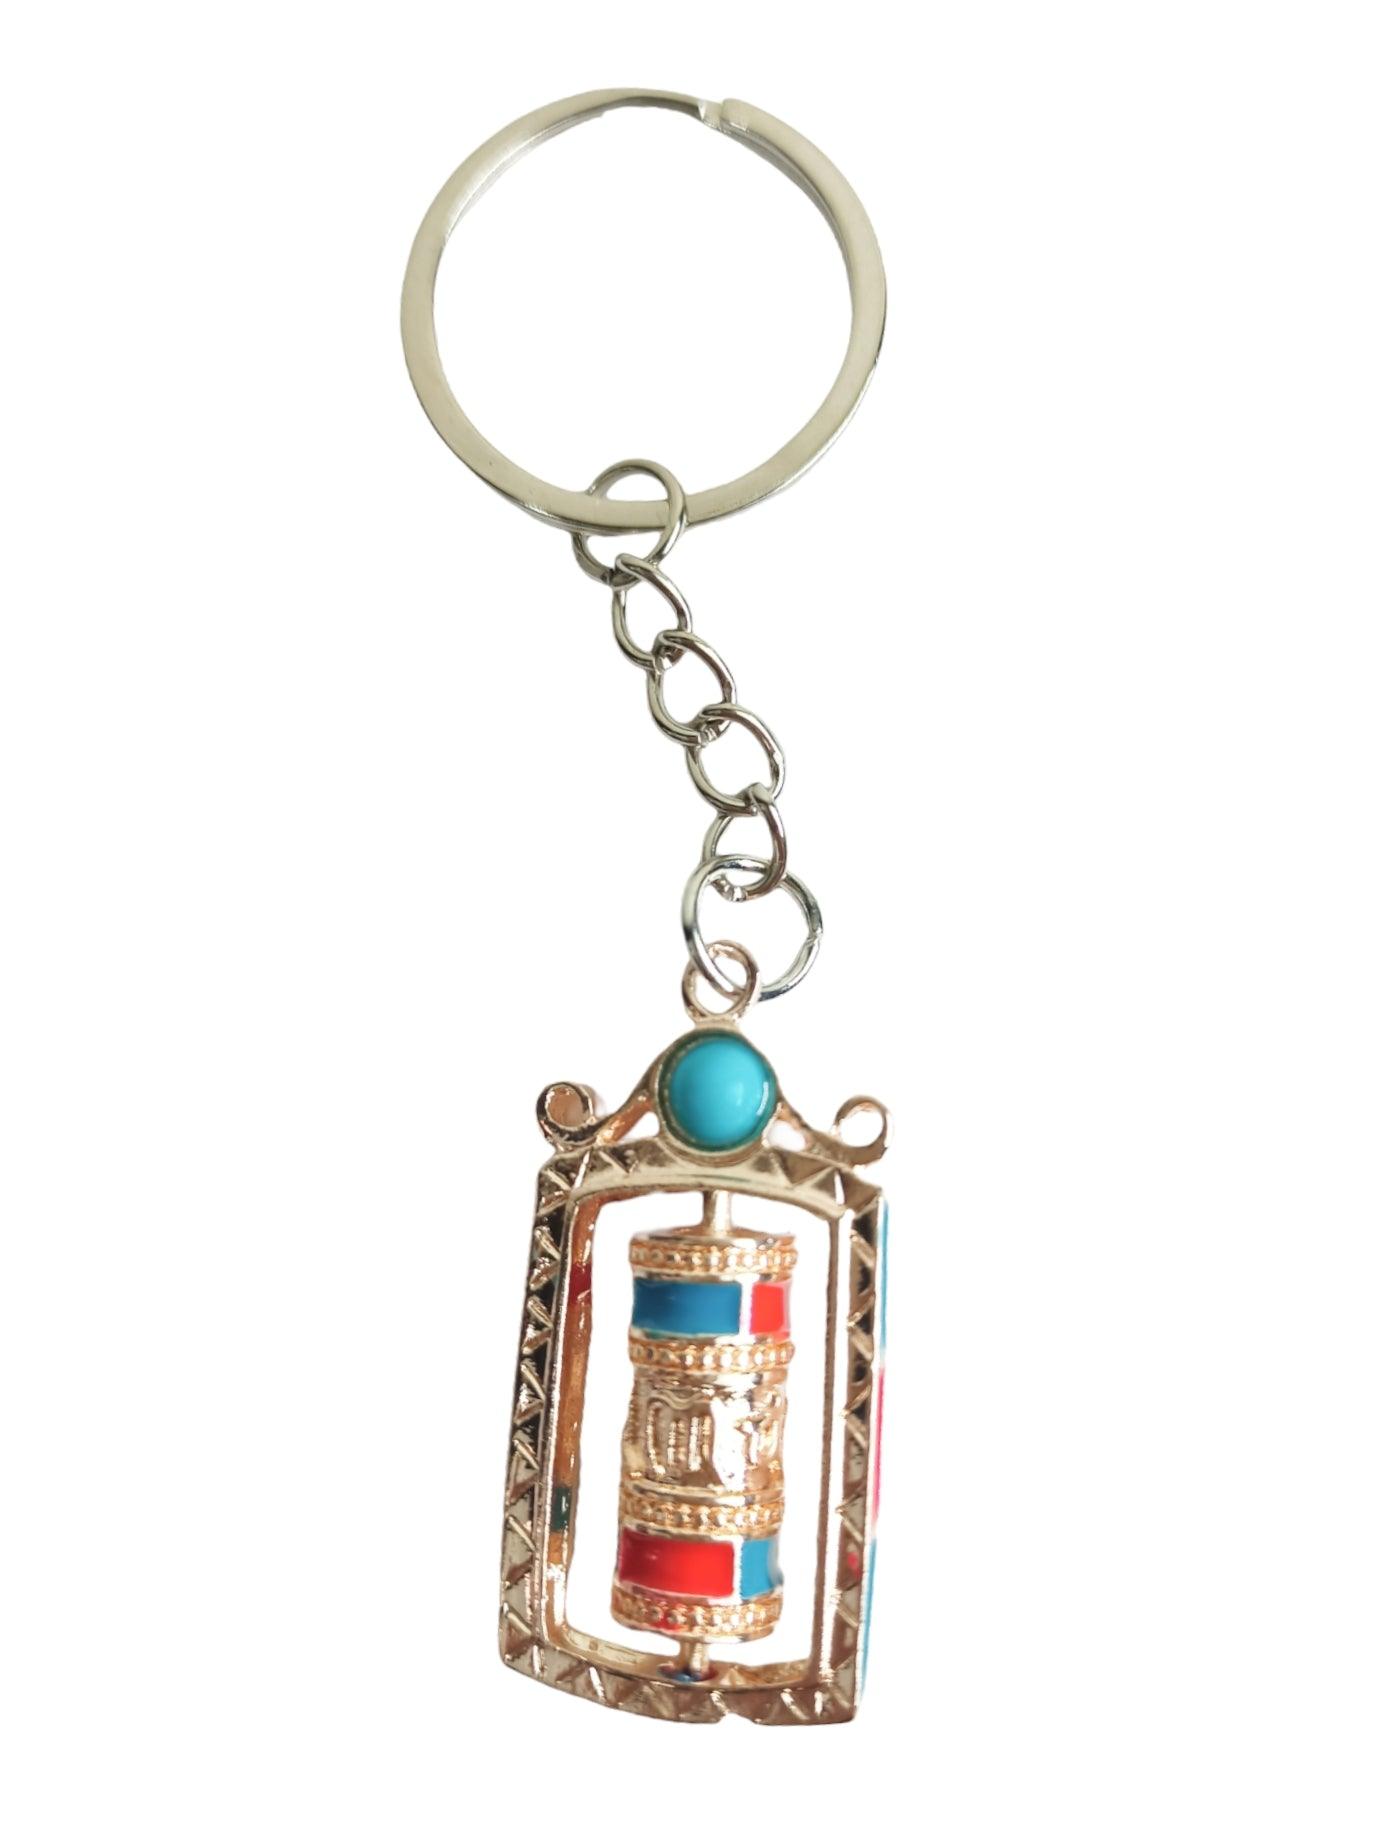 Buddhist Prayer Wheel Keychain | Julley keychain | Ladakh Souvenirs - ZANSKAR ARTS